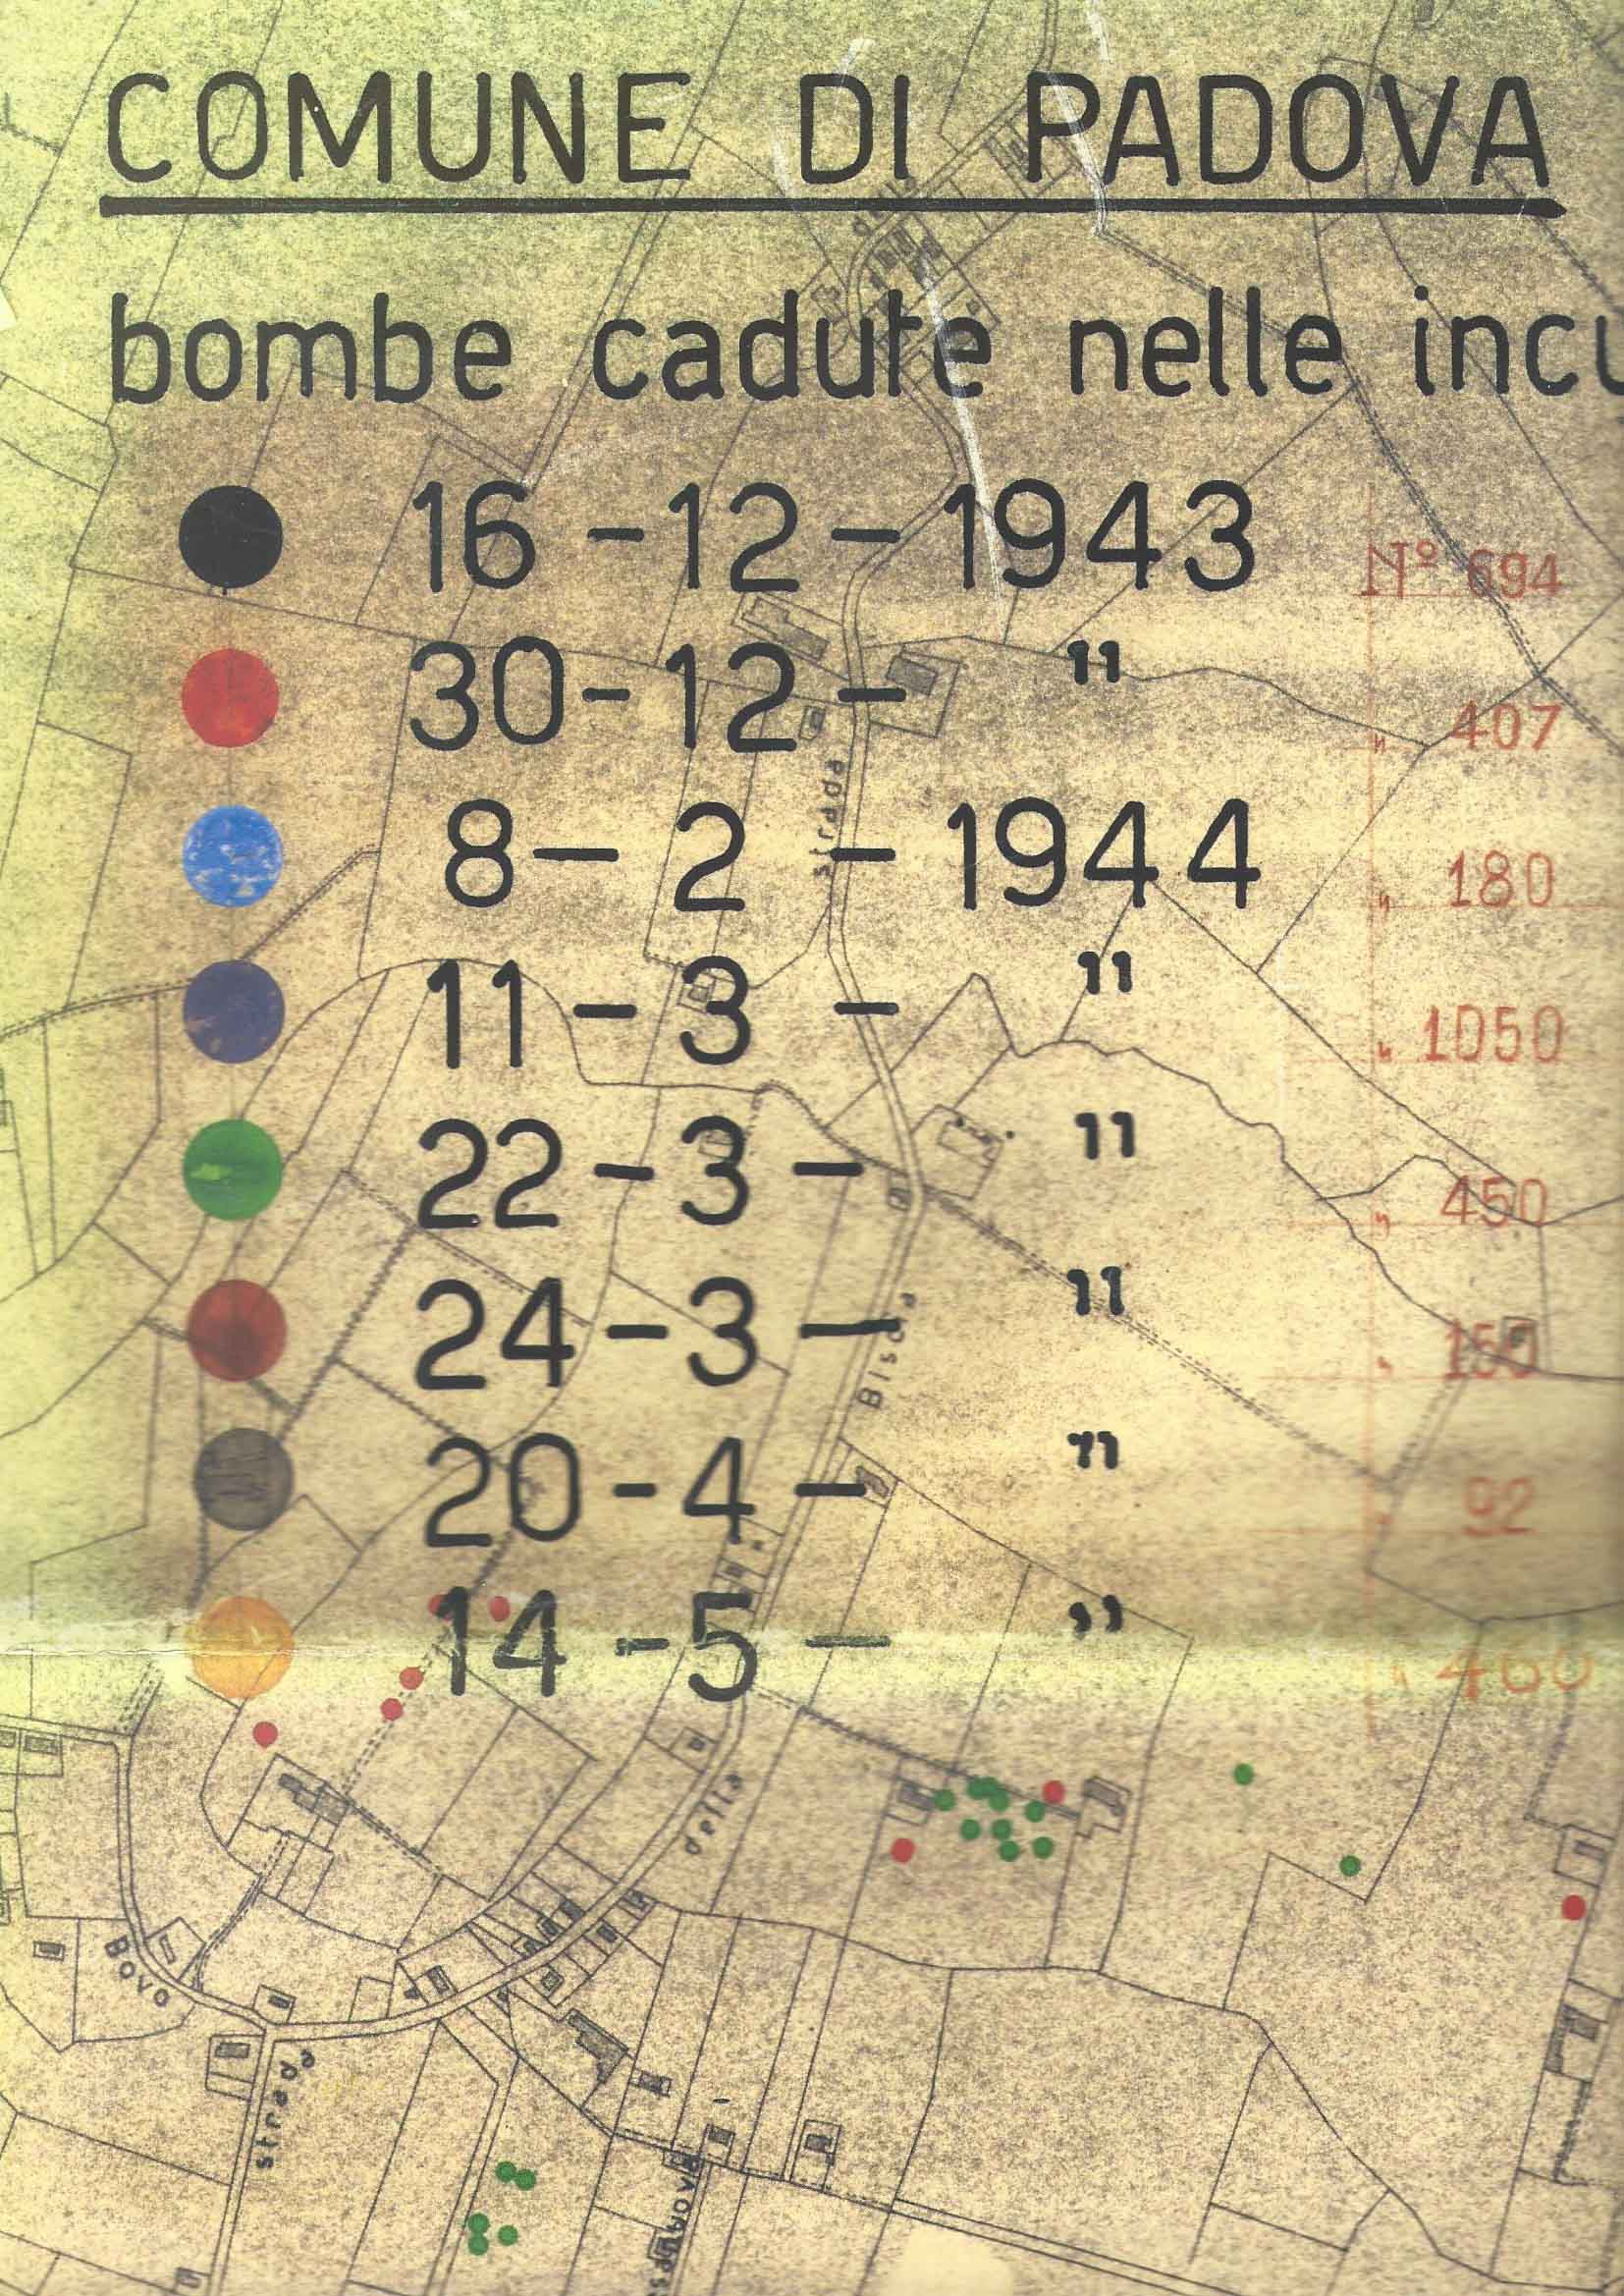 bombardamenti_legenda_1944